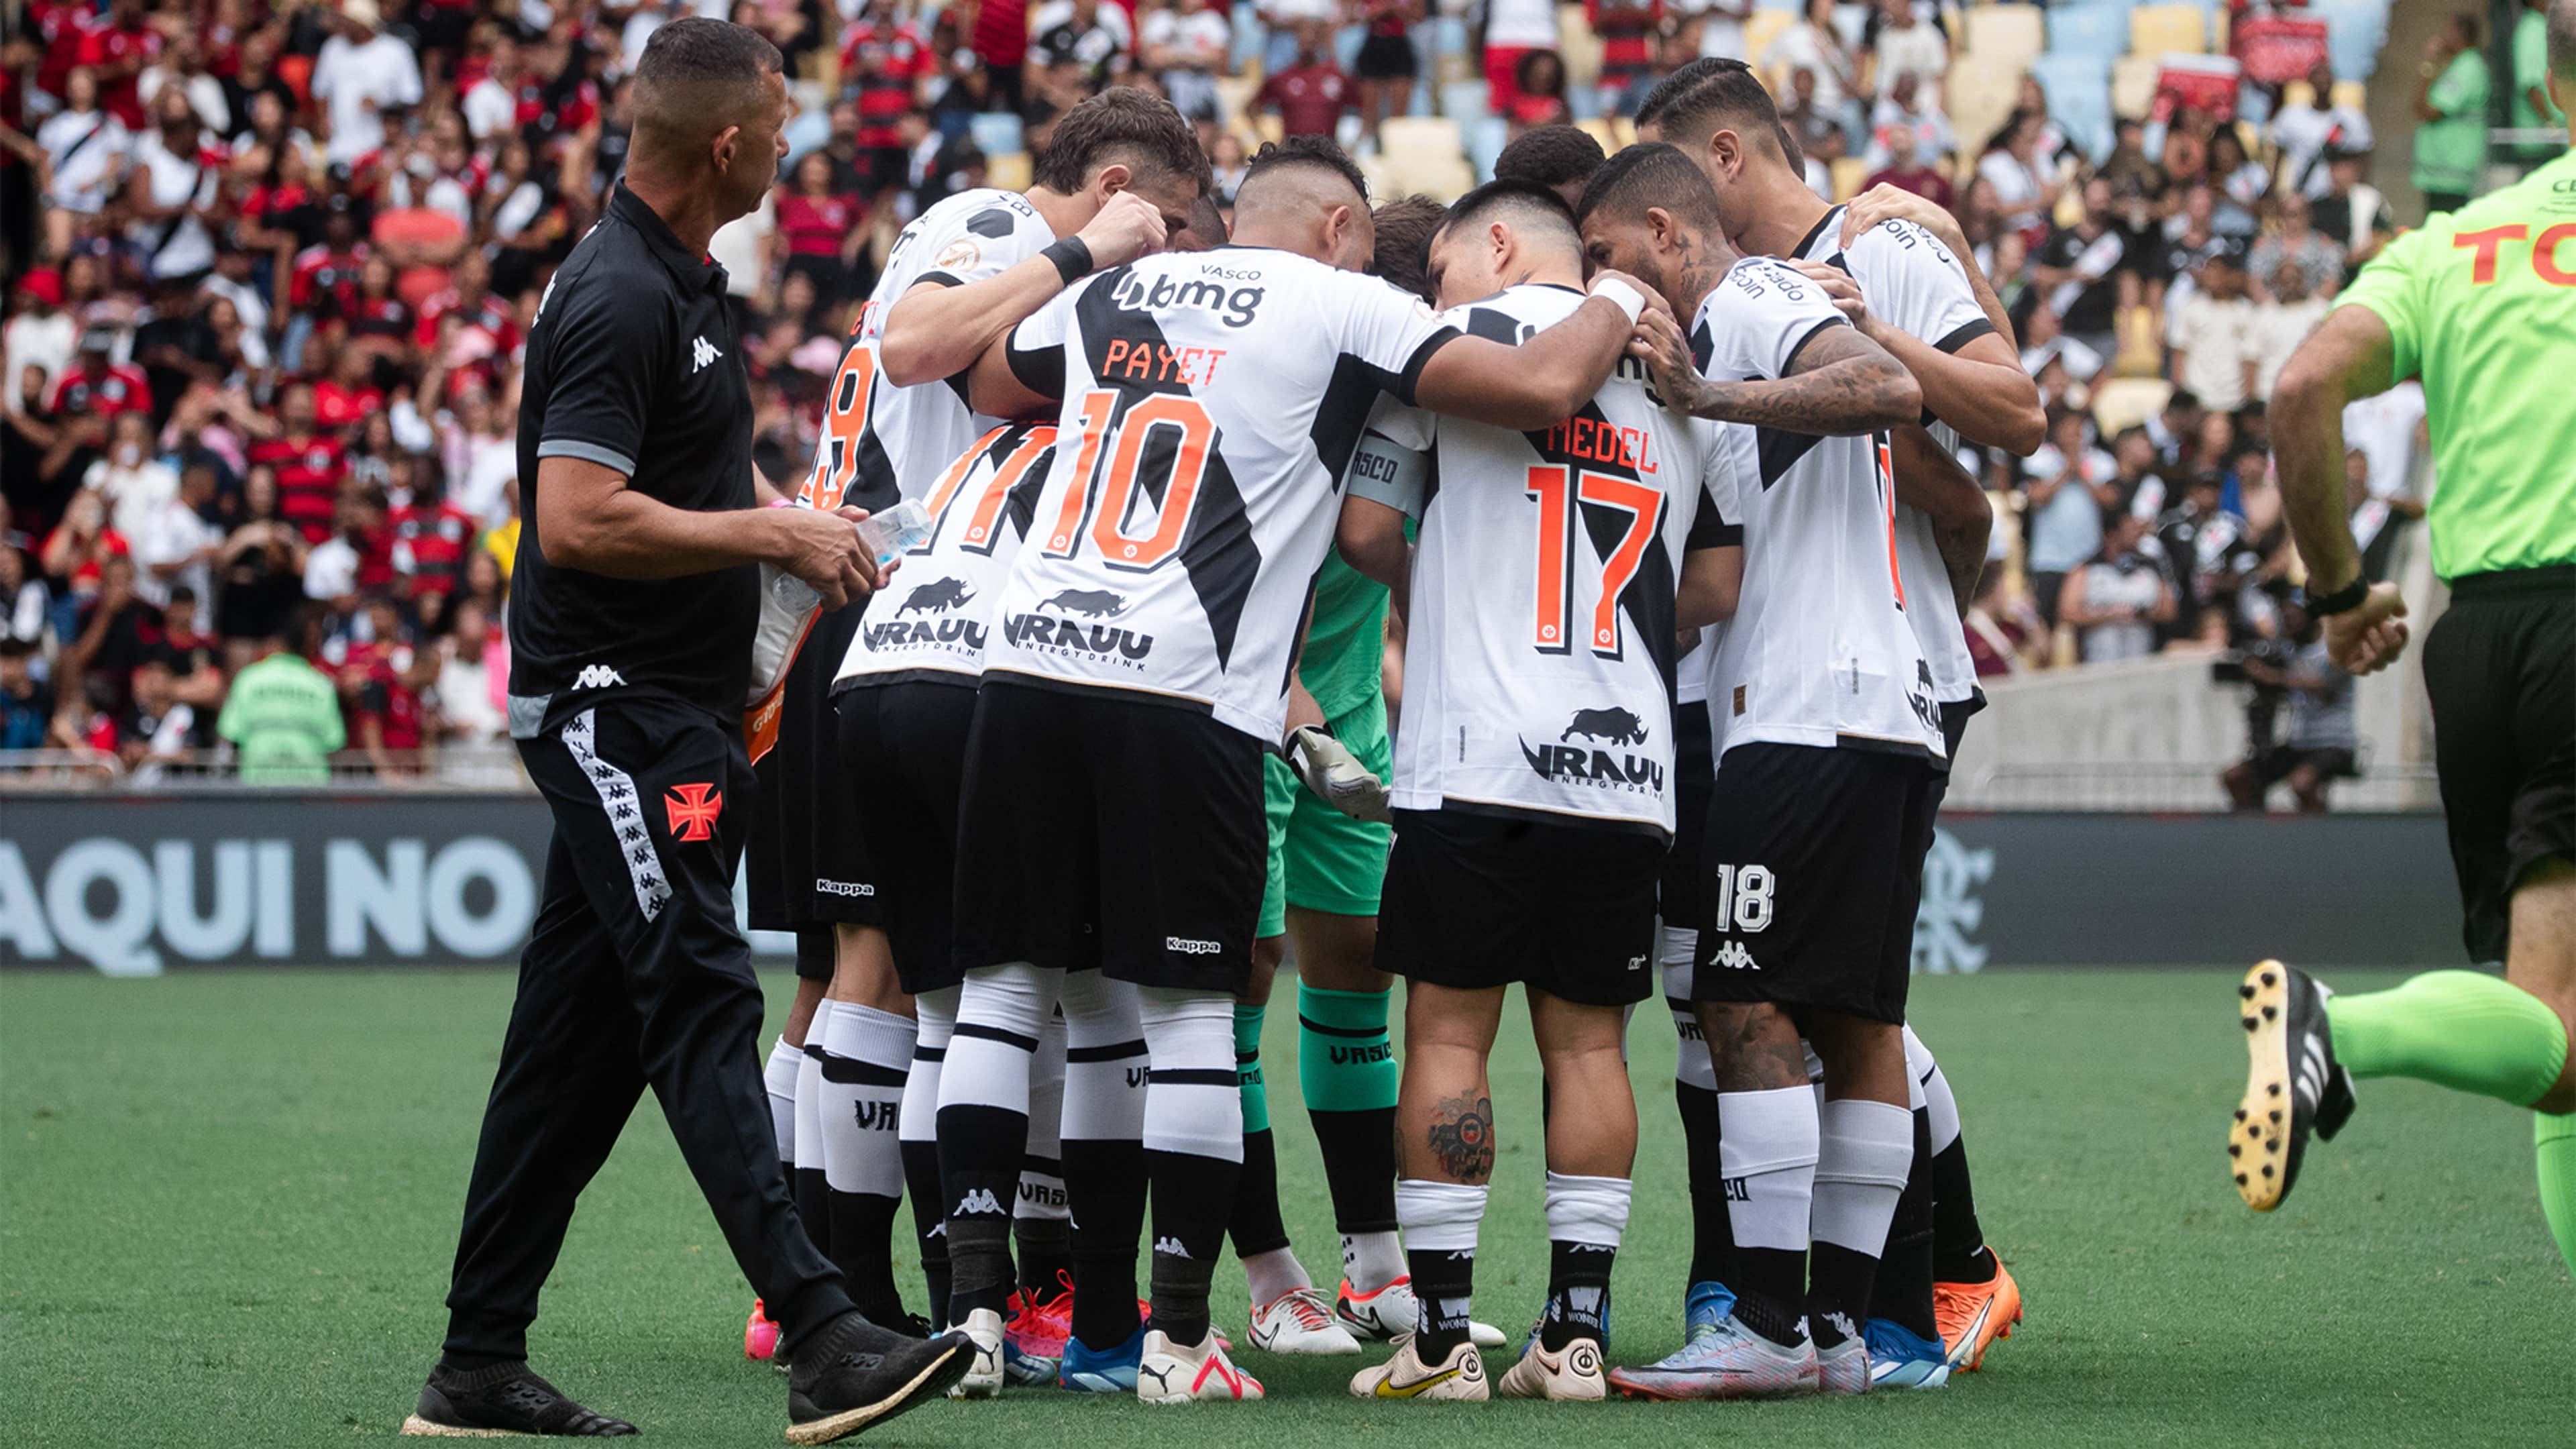 Jogos de Tombense: Descubra o emocionante mundo do futebol em Minas Gerais